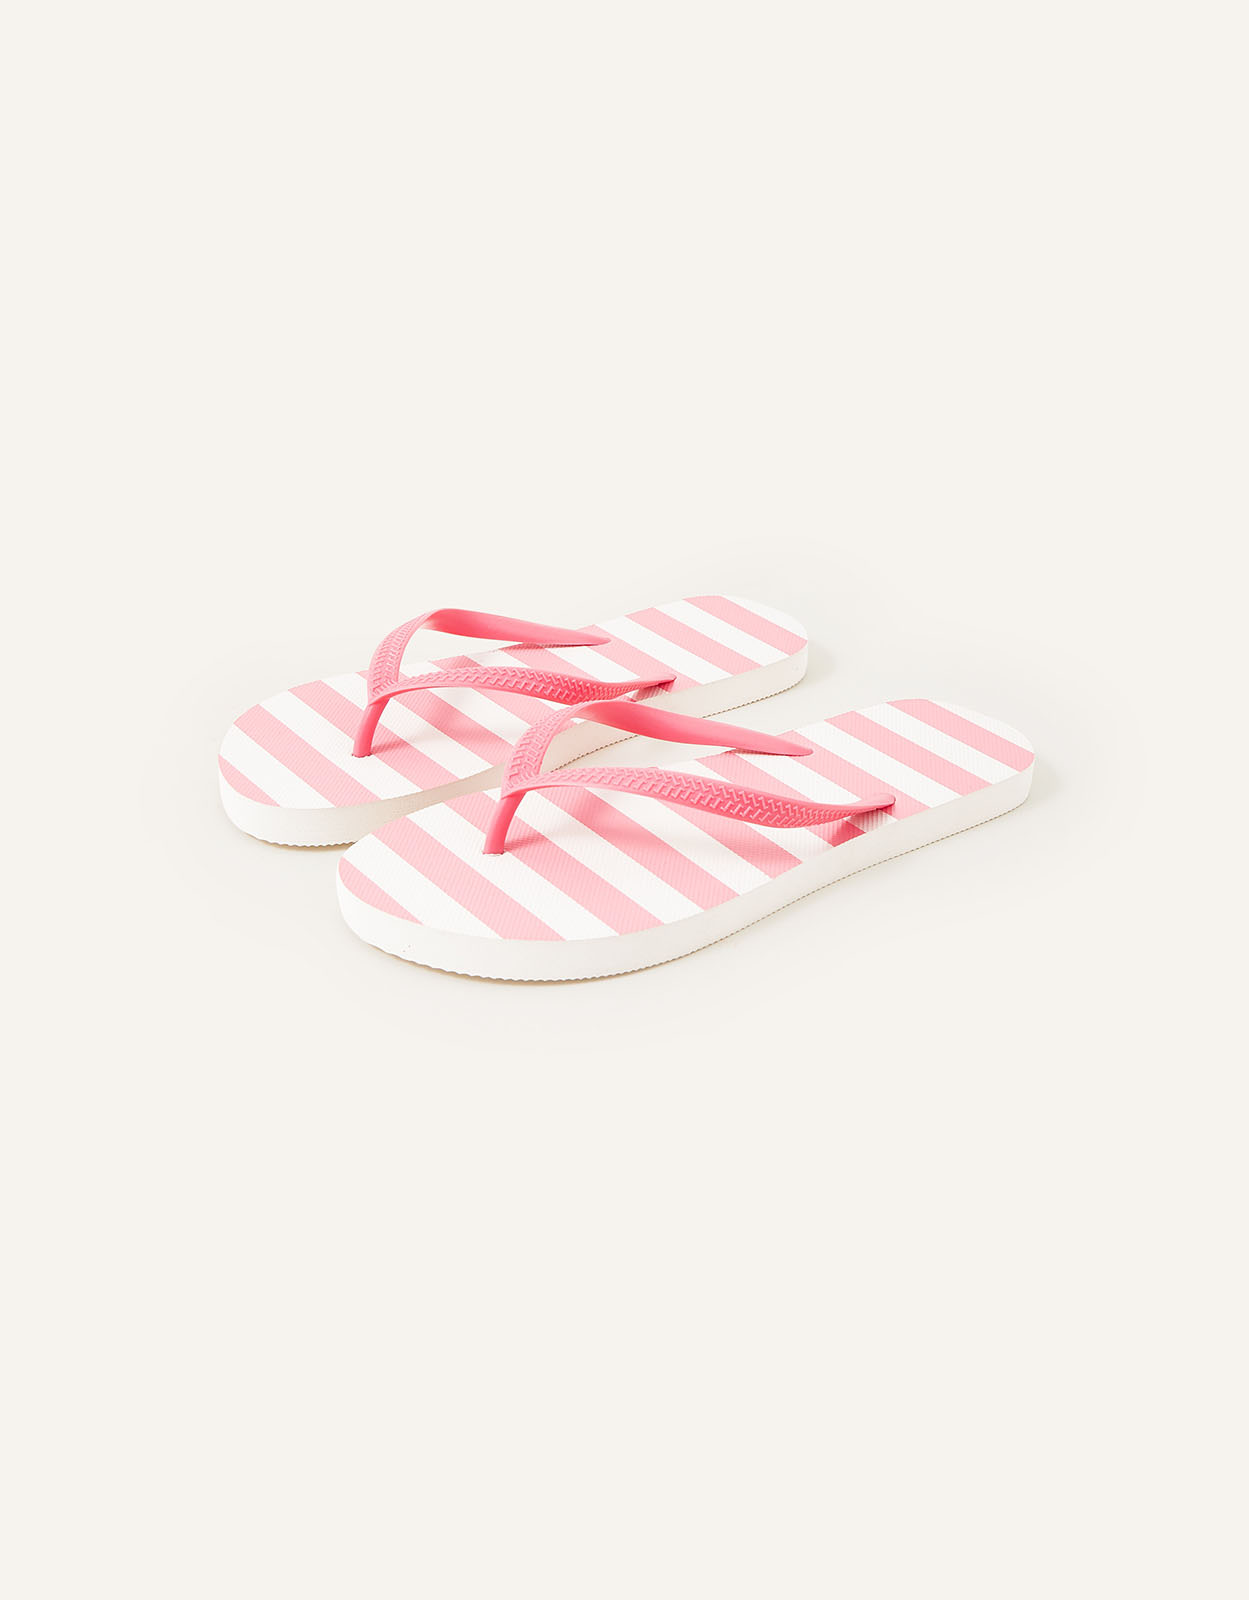 Accessorize Women's Stripe Flip Flops Pink, Size: L